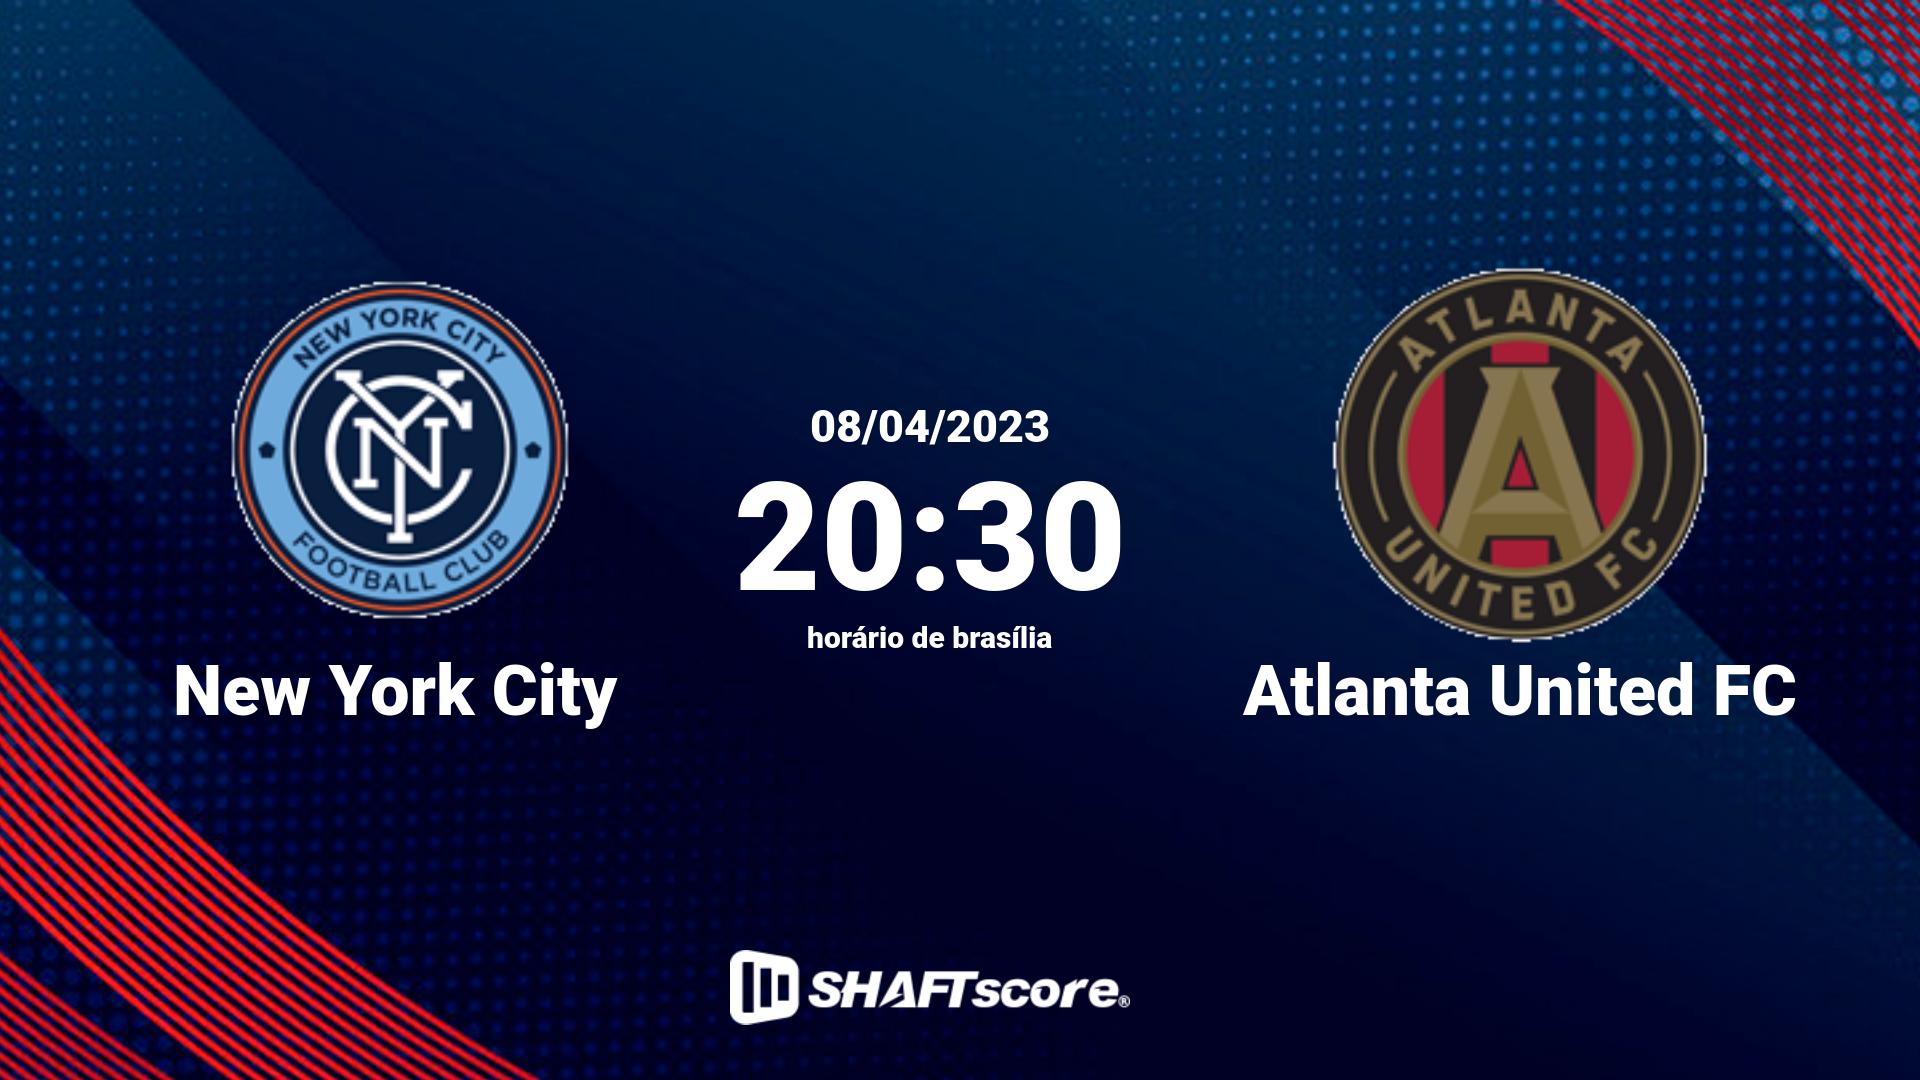 Estatísticas do jogo New York City vs Atlanta United FC 08.04 20:30